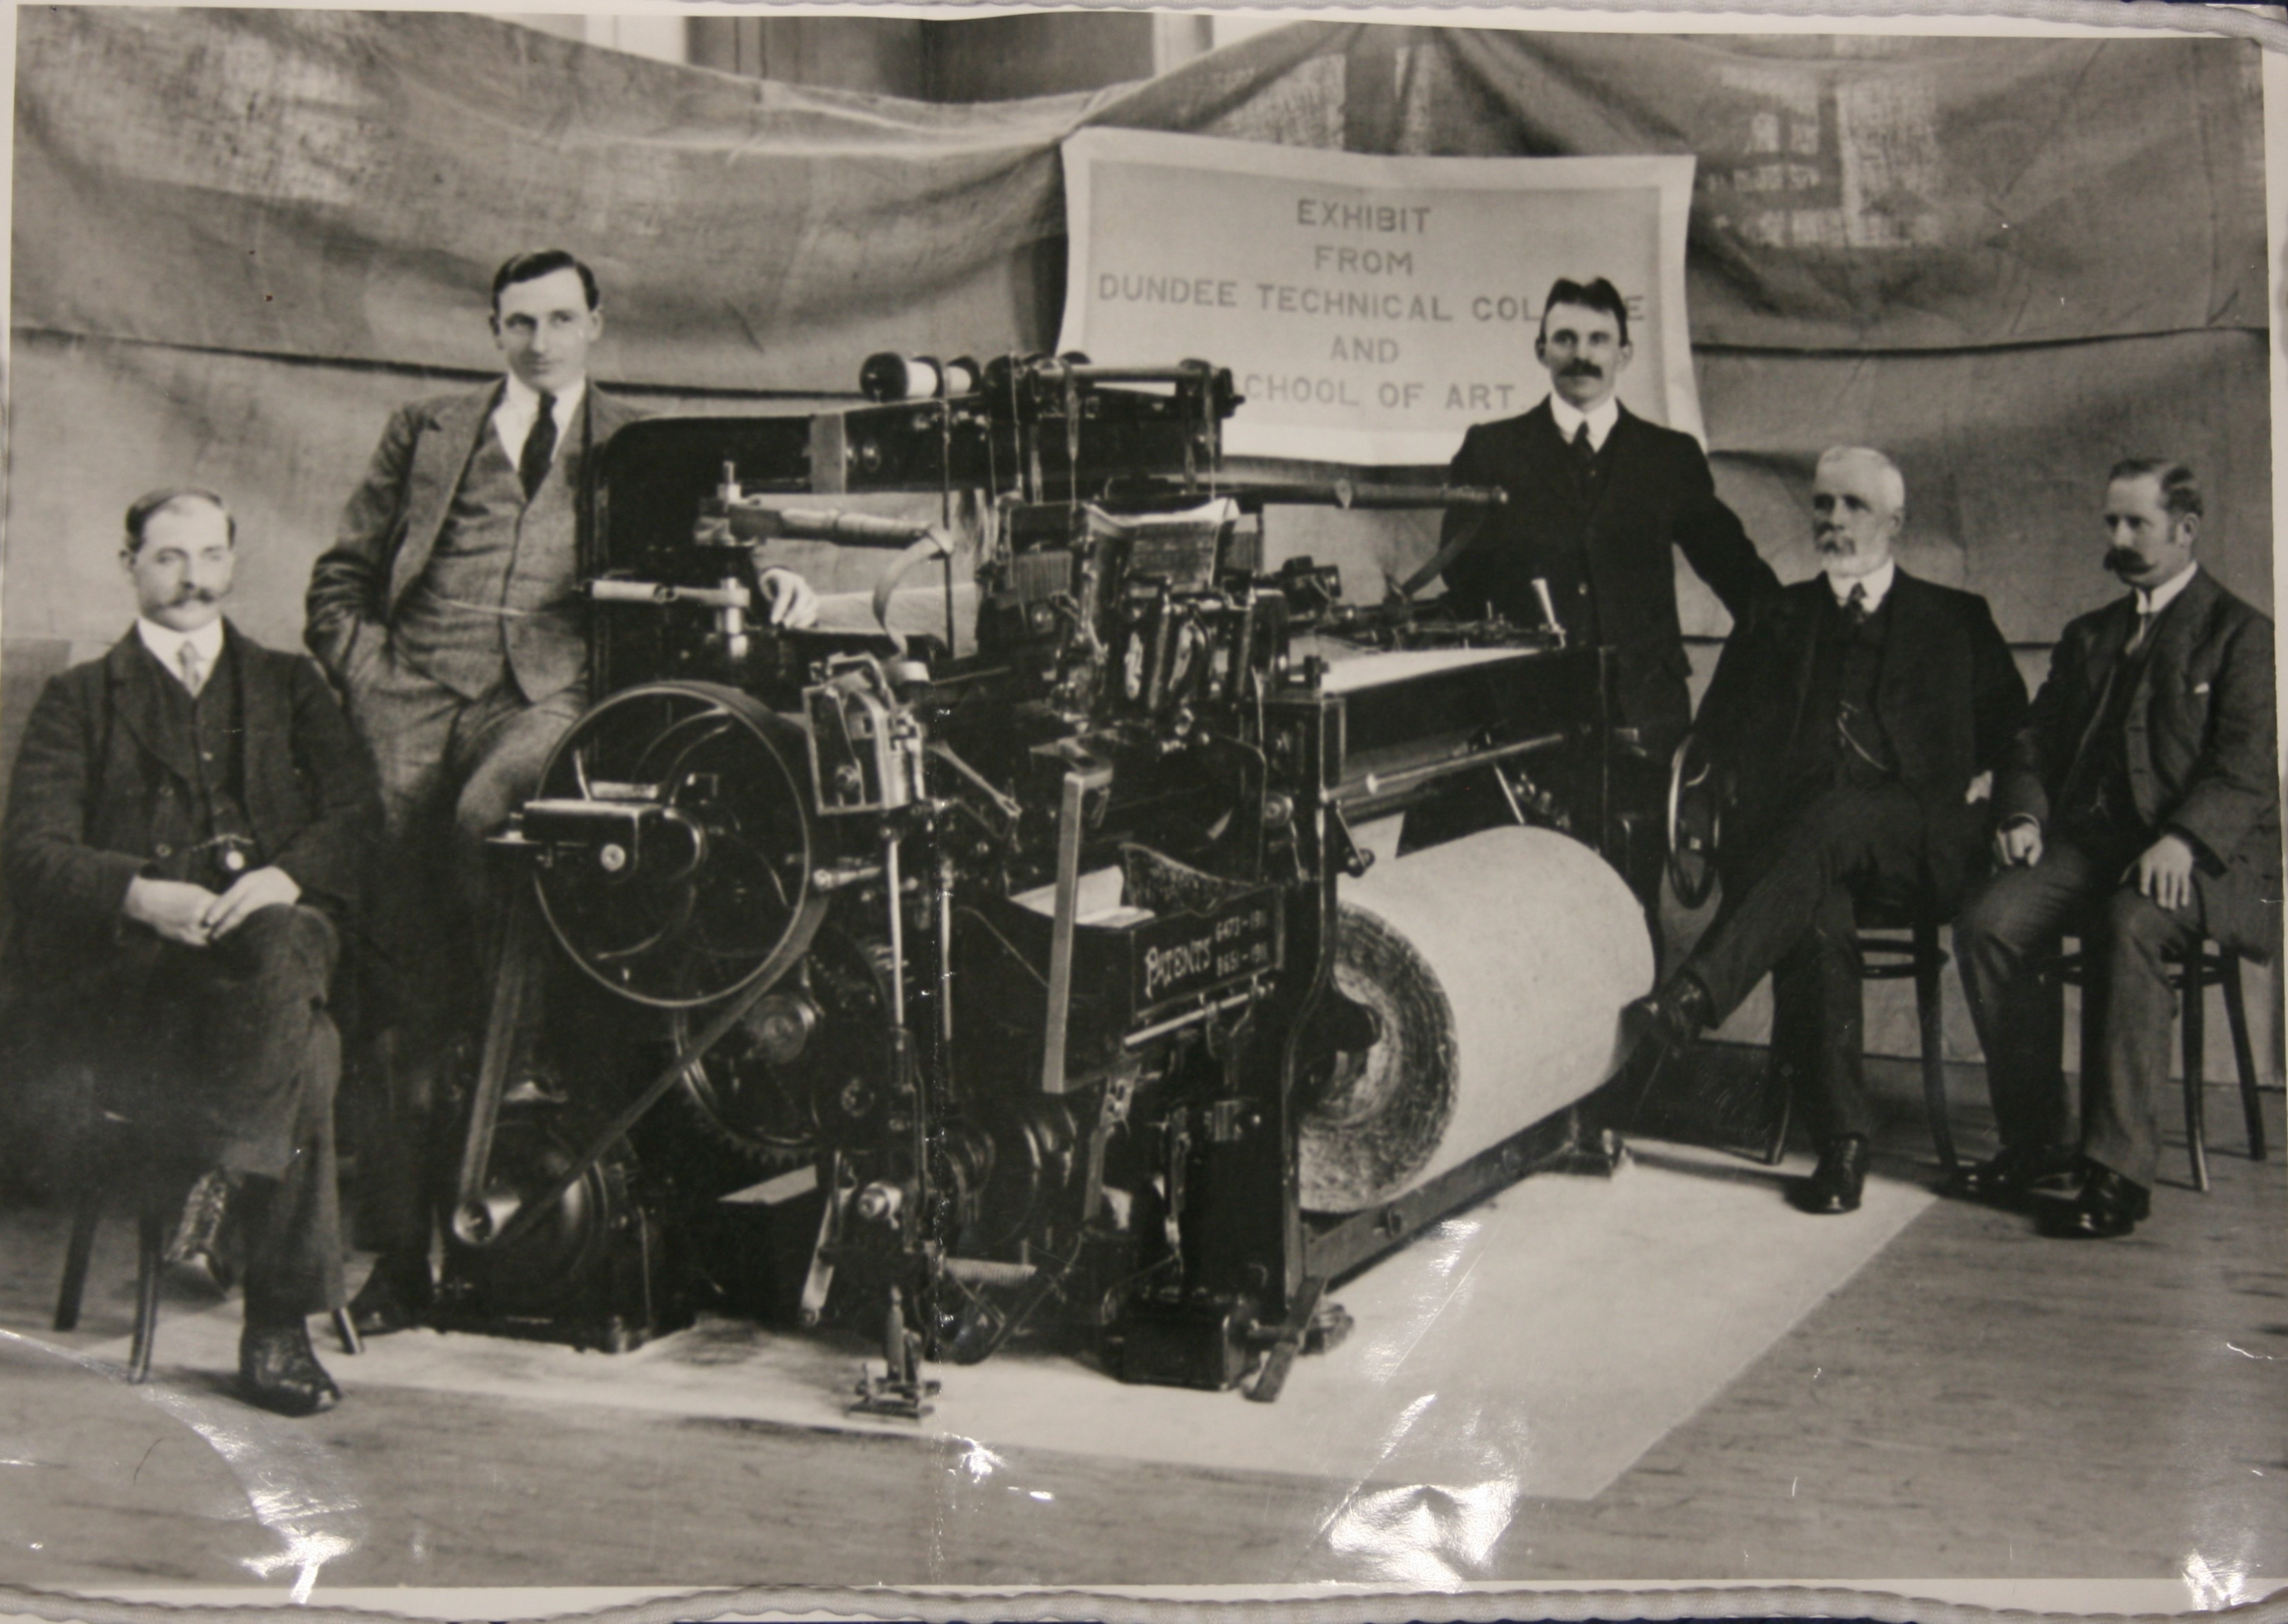 Dundee Technical College Textiles Exhibit circa 1911